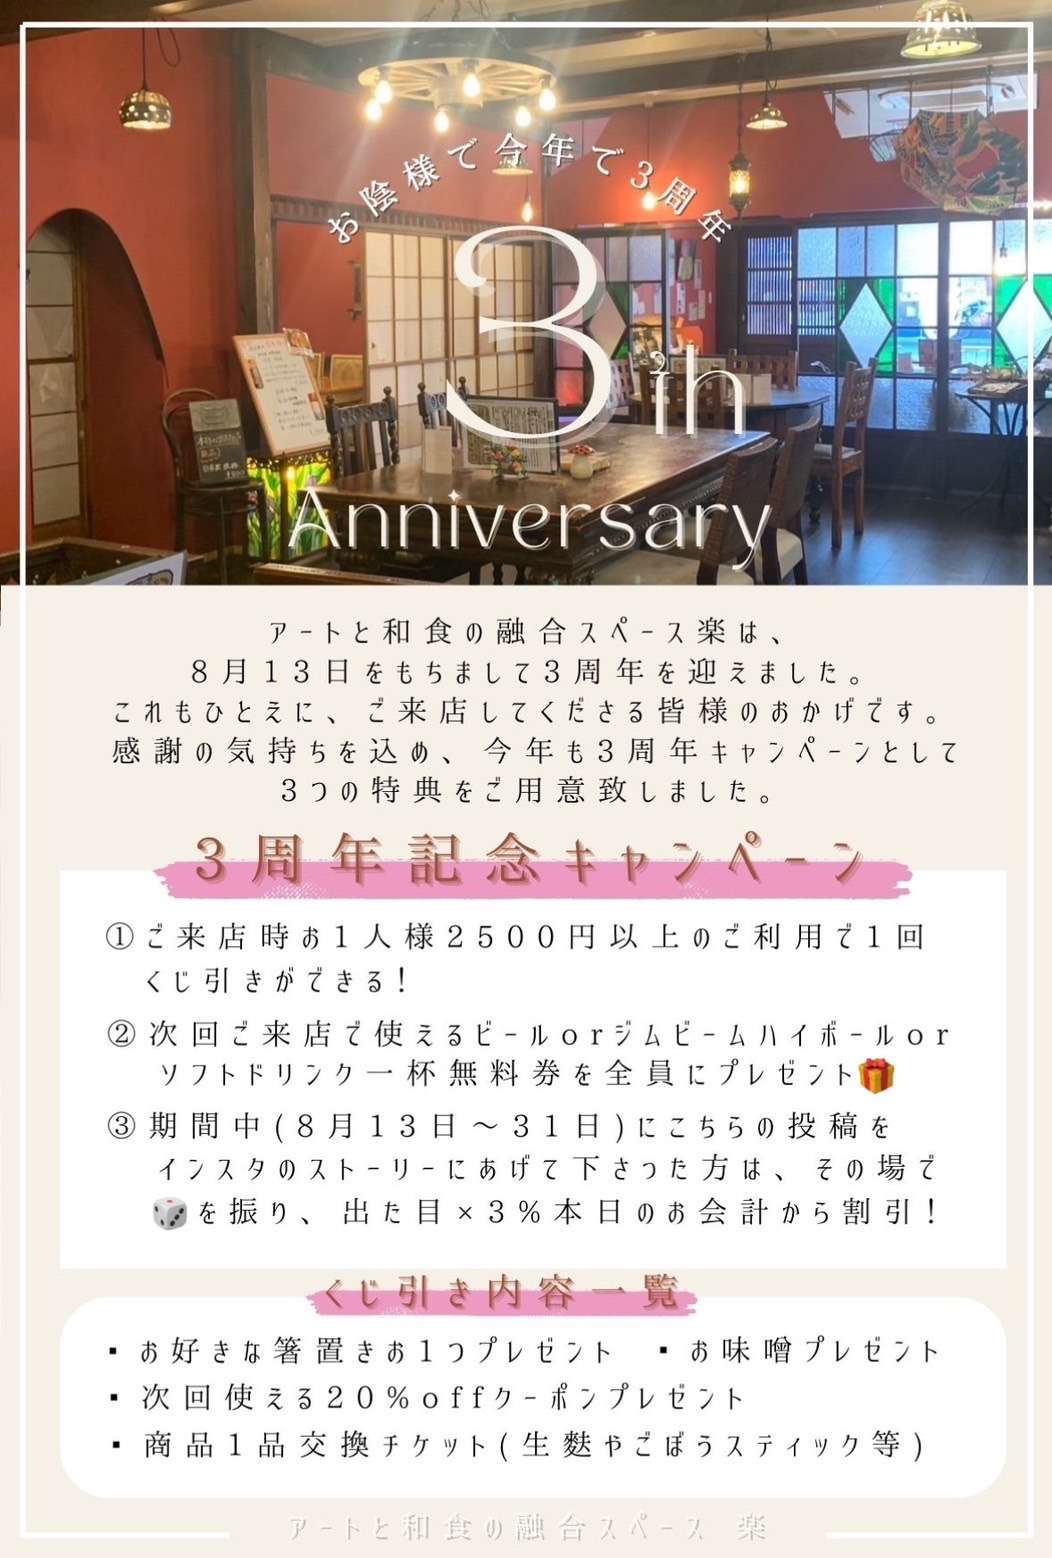 3周年記念イベント 詳細発表！！　大和居酒屋 楽